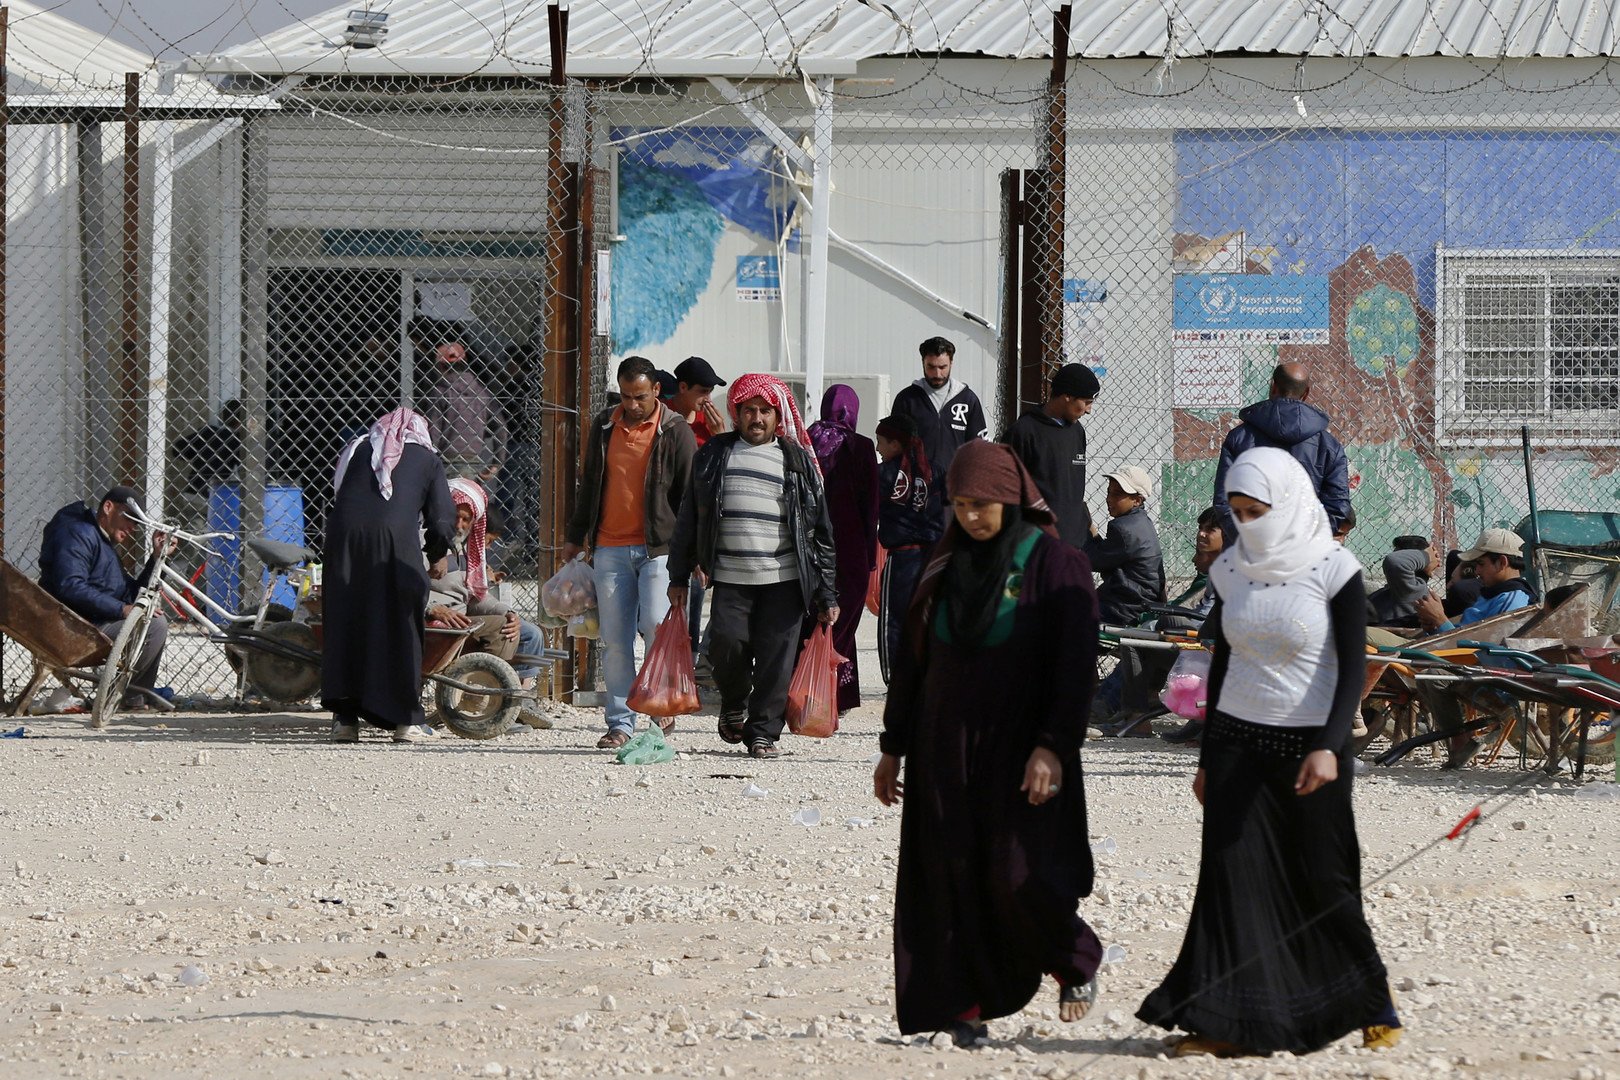 تأجيل دعوى قضائية بشأن إبعاد وترحيل لاجئين سوريين في مصر بحجة انتمائهم لجماعة الإخوان